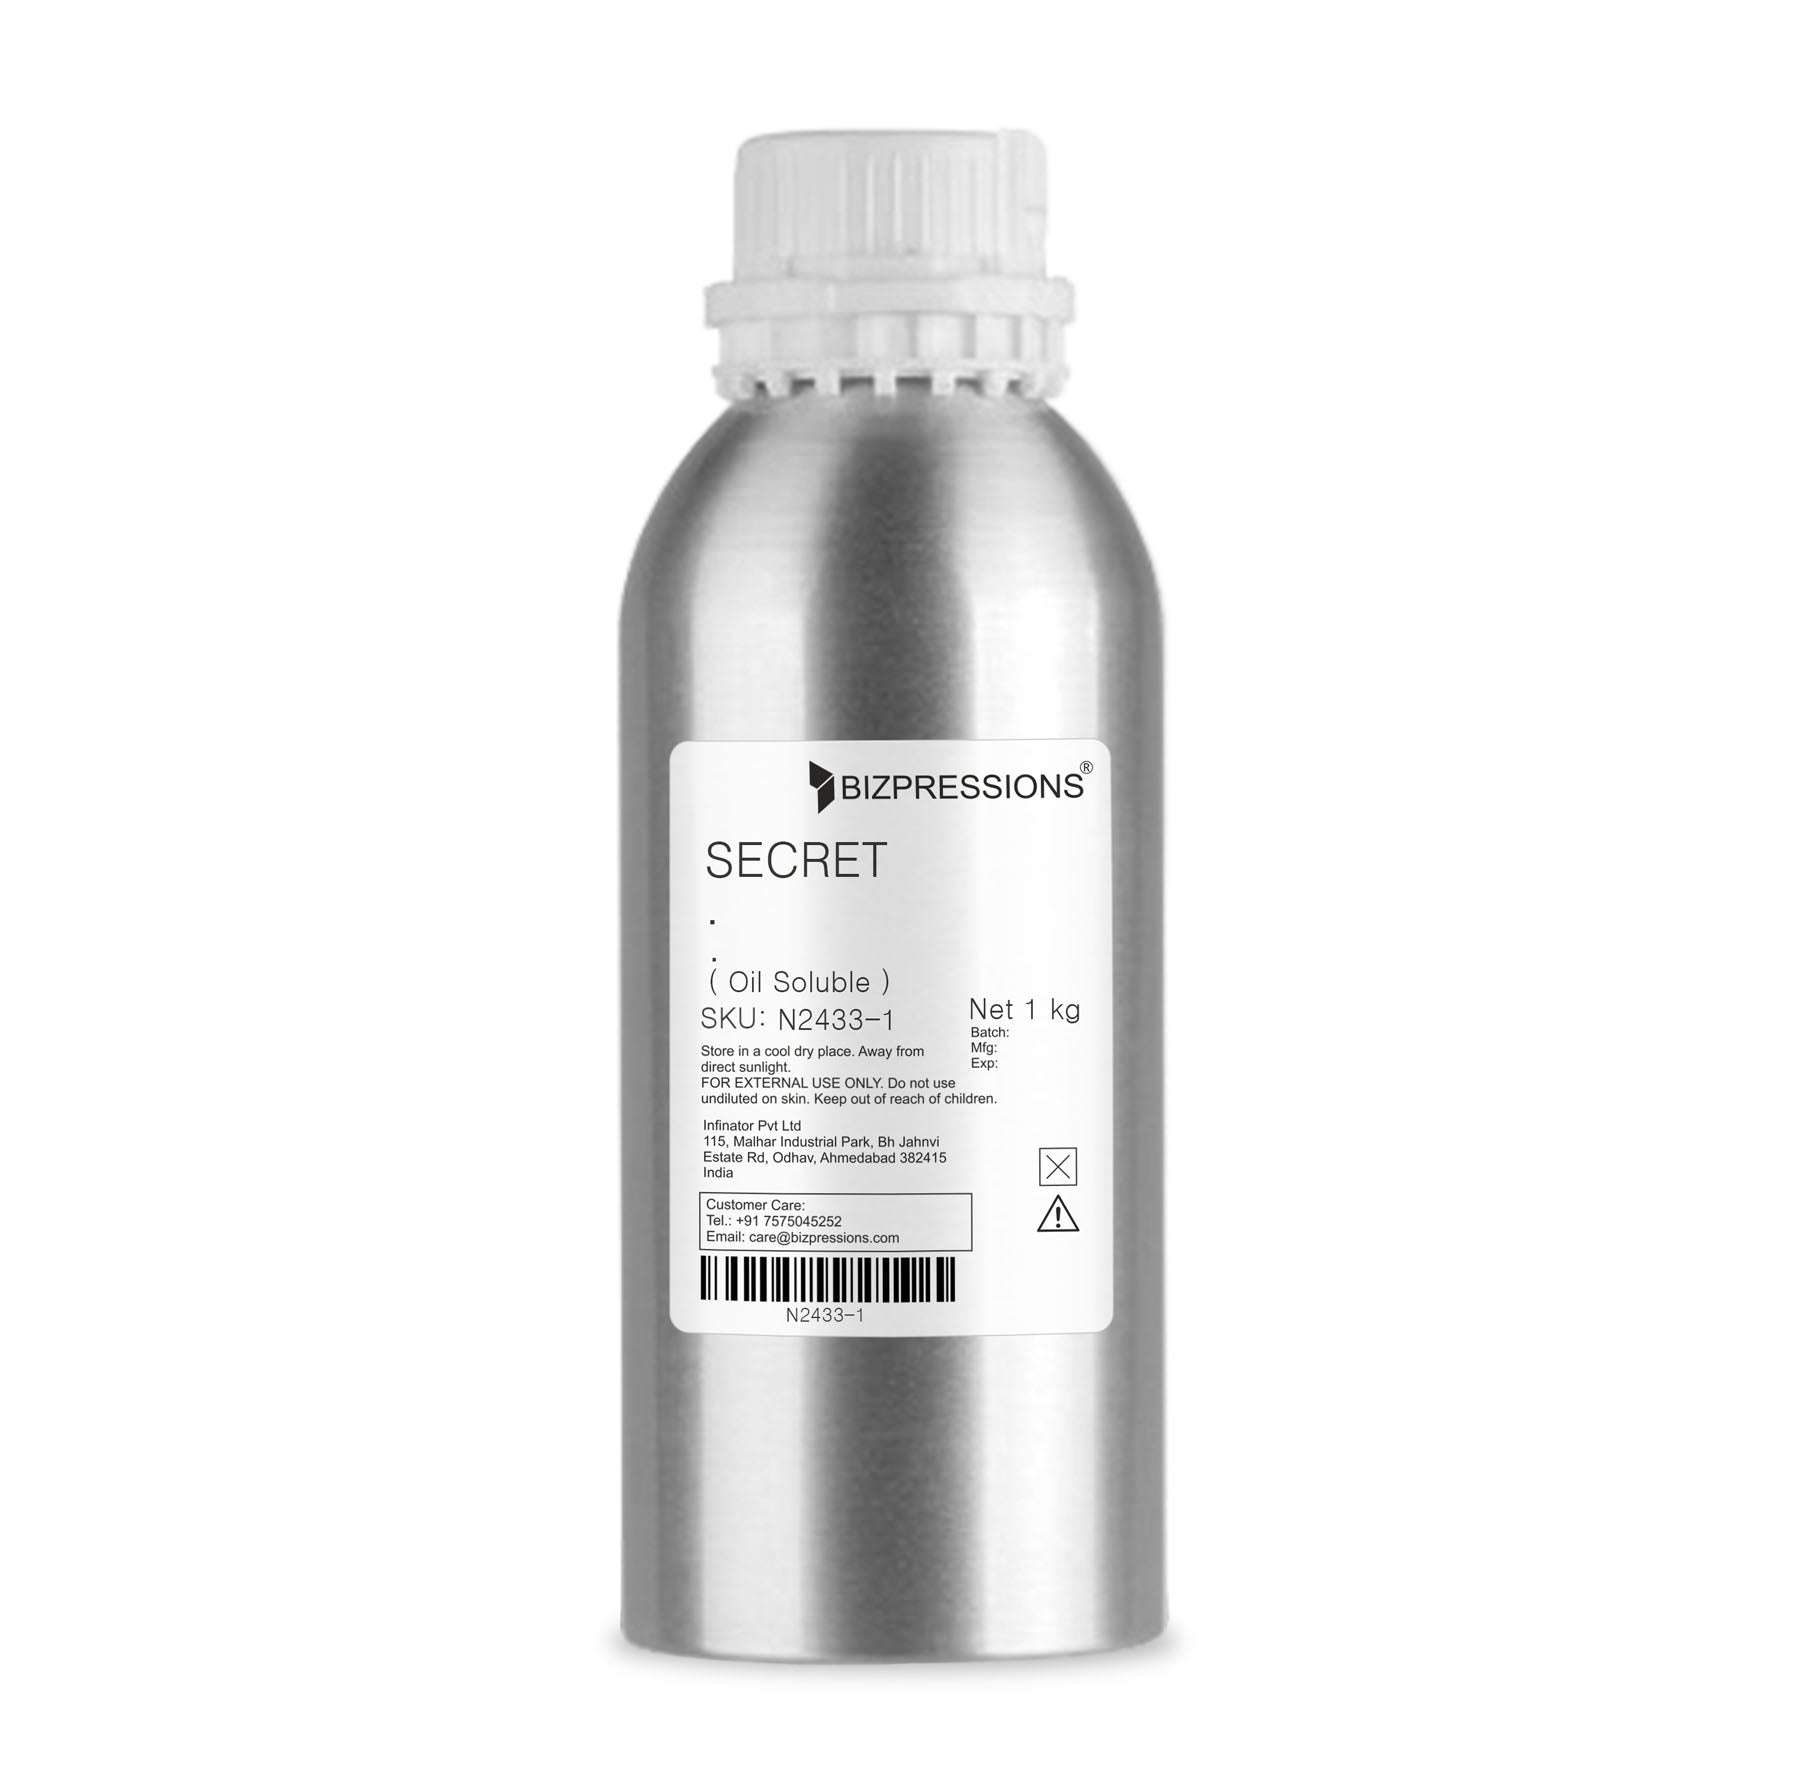 SECRET Fragrance ( Oil Soluble ) - 1 kg